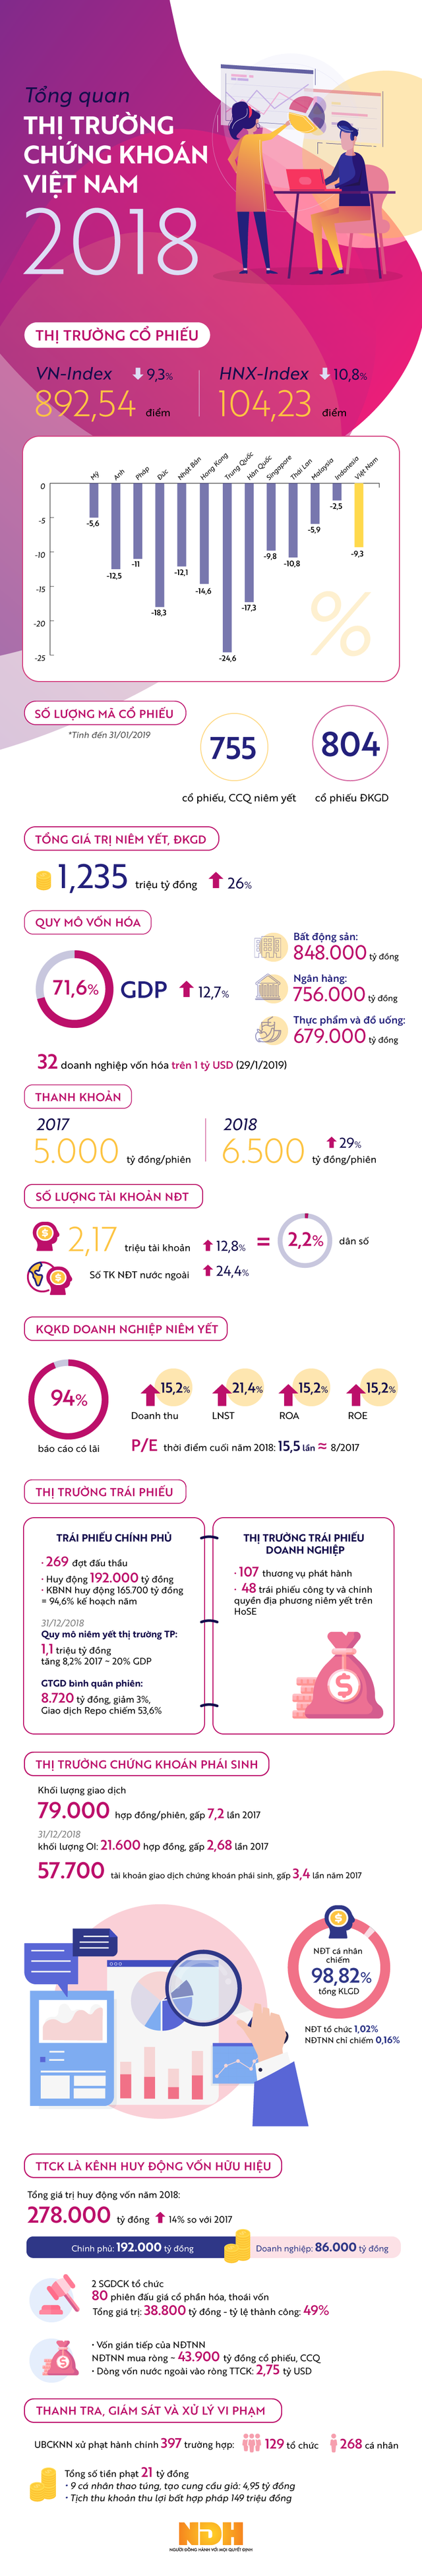 [Infographic] Những con số đáng tự hào của TTCK Việt Nam - Ảnh 1.